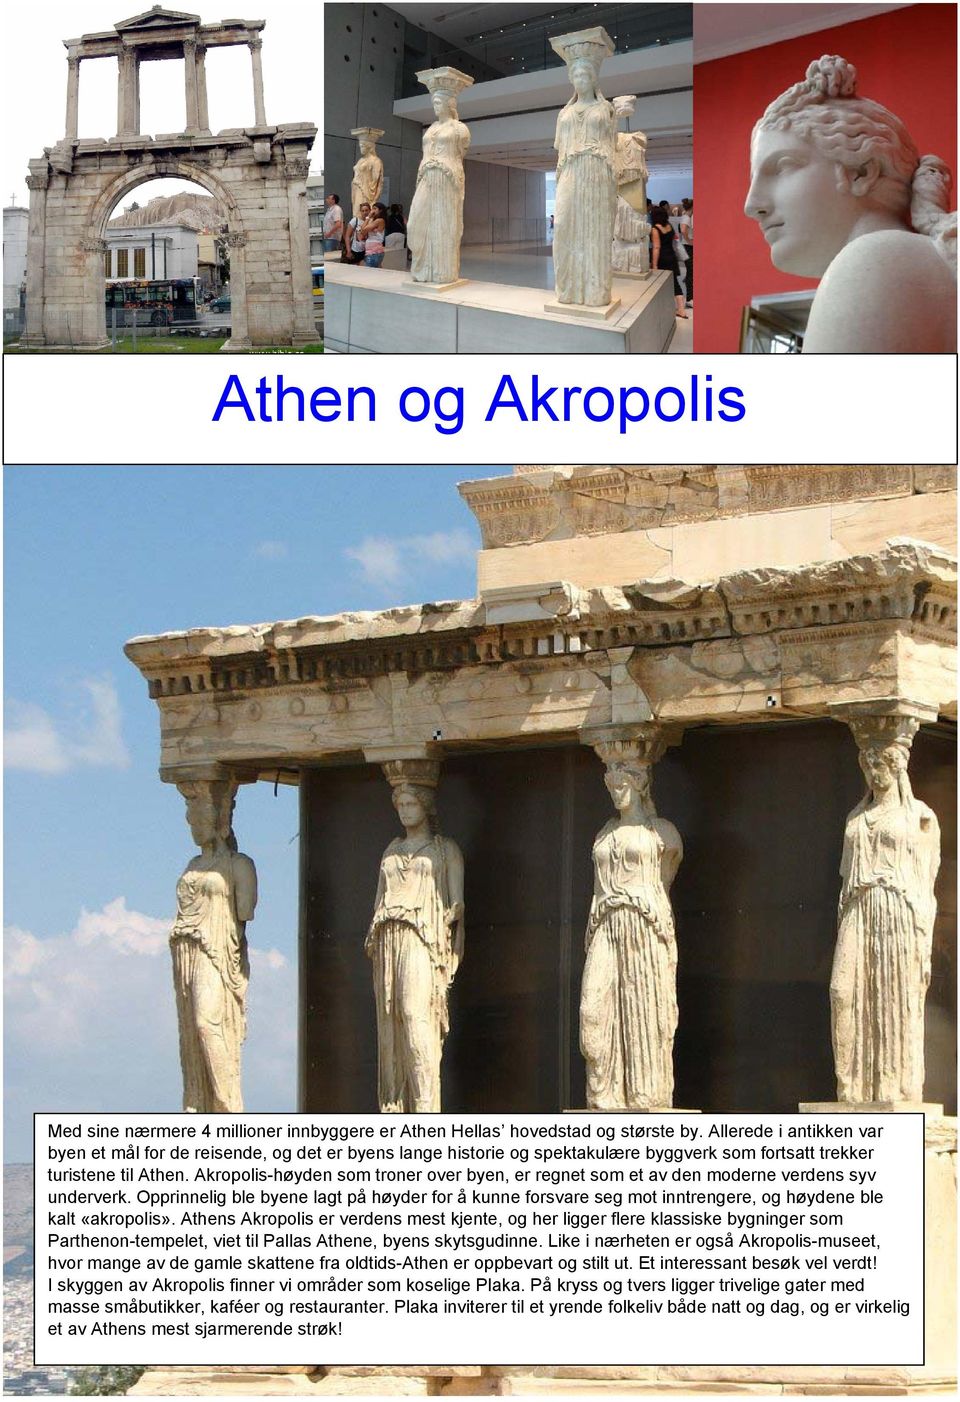 Akropolis-høyden som troner over byen, er regnet som et av den moderne verdens syv underverk.